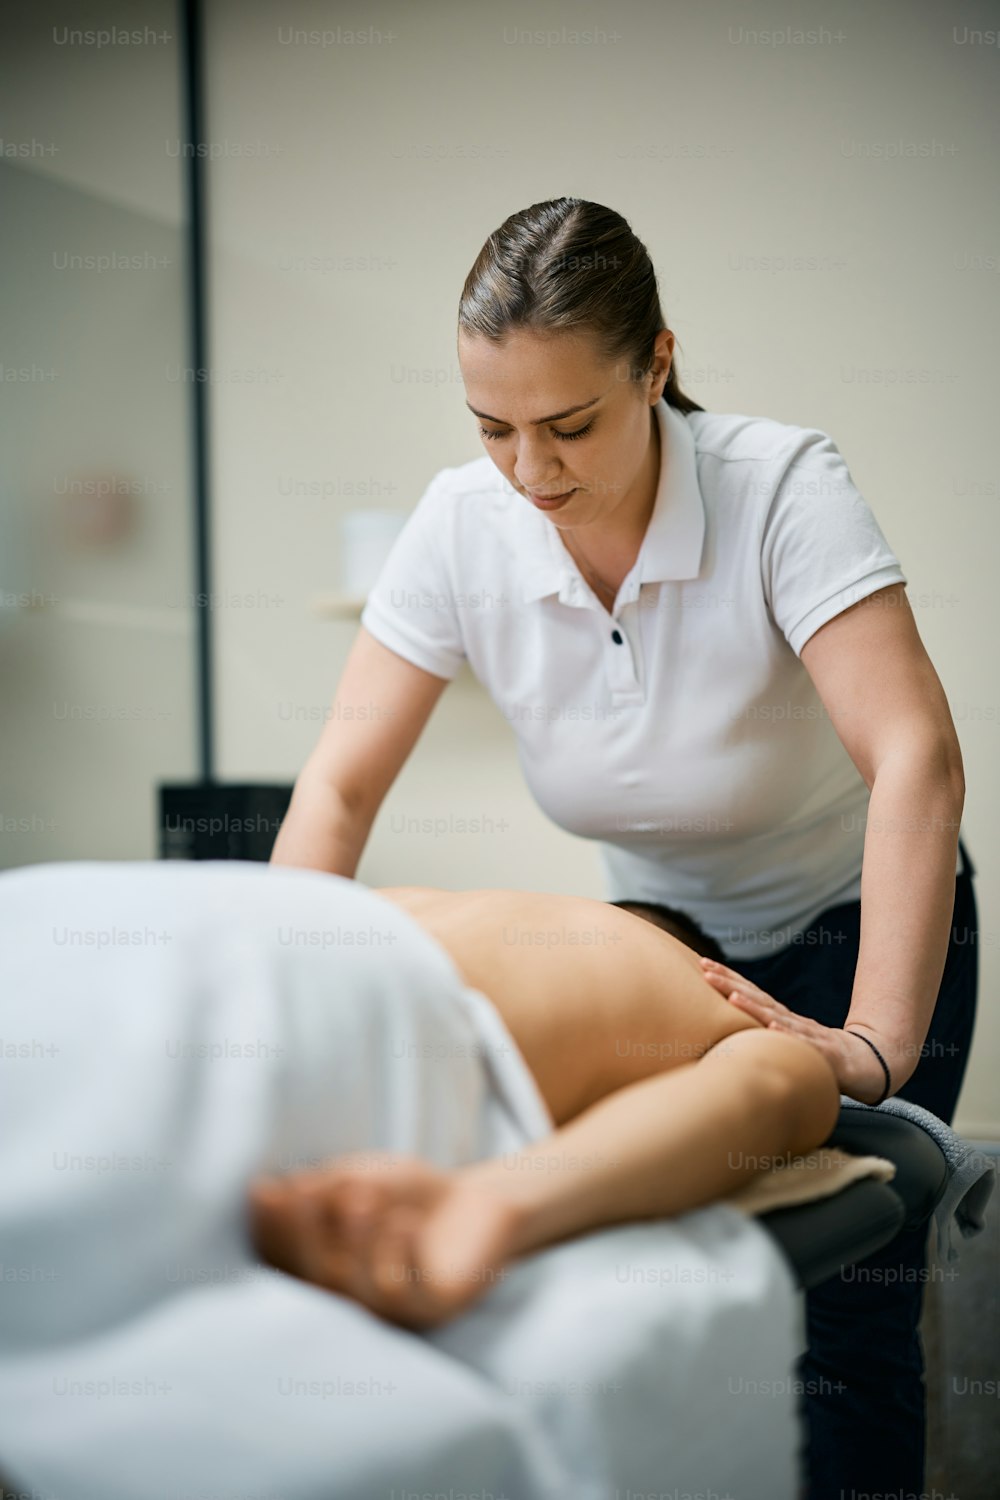 Une kinésithérapeute masse le dos d’un homme pendant un traitement dans un centre de physiothérapie.